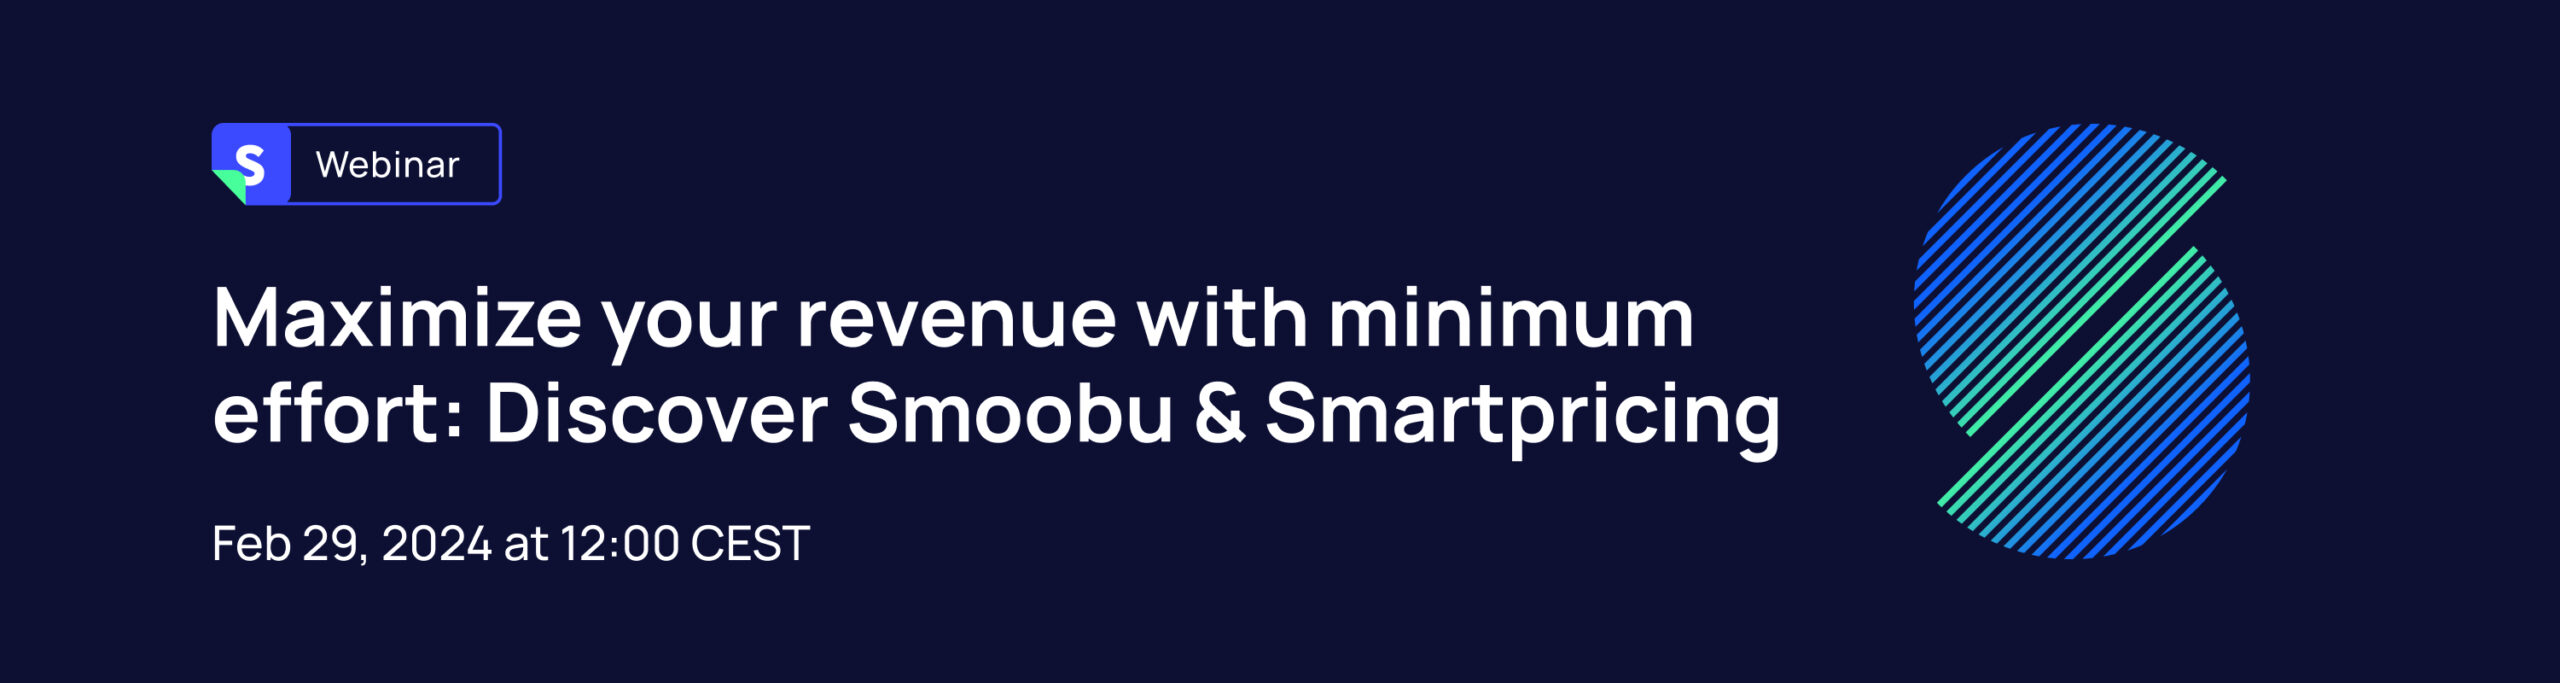 ᐅ Maximisez vos revenus avec Smoobu & Smartpricing | Smoobu